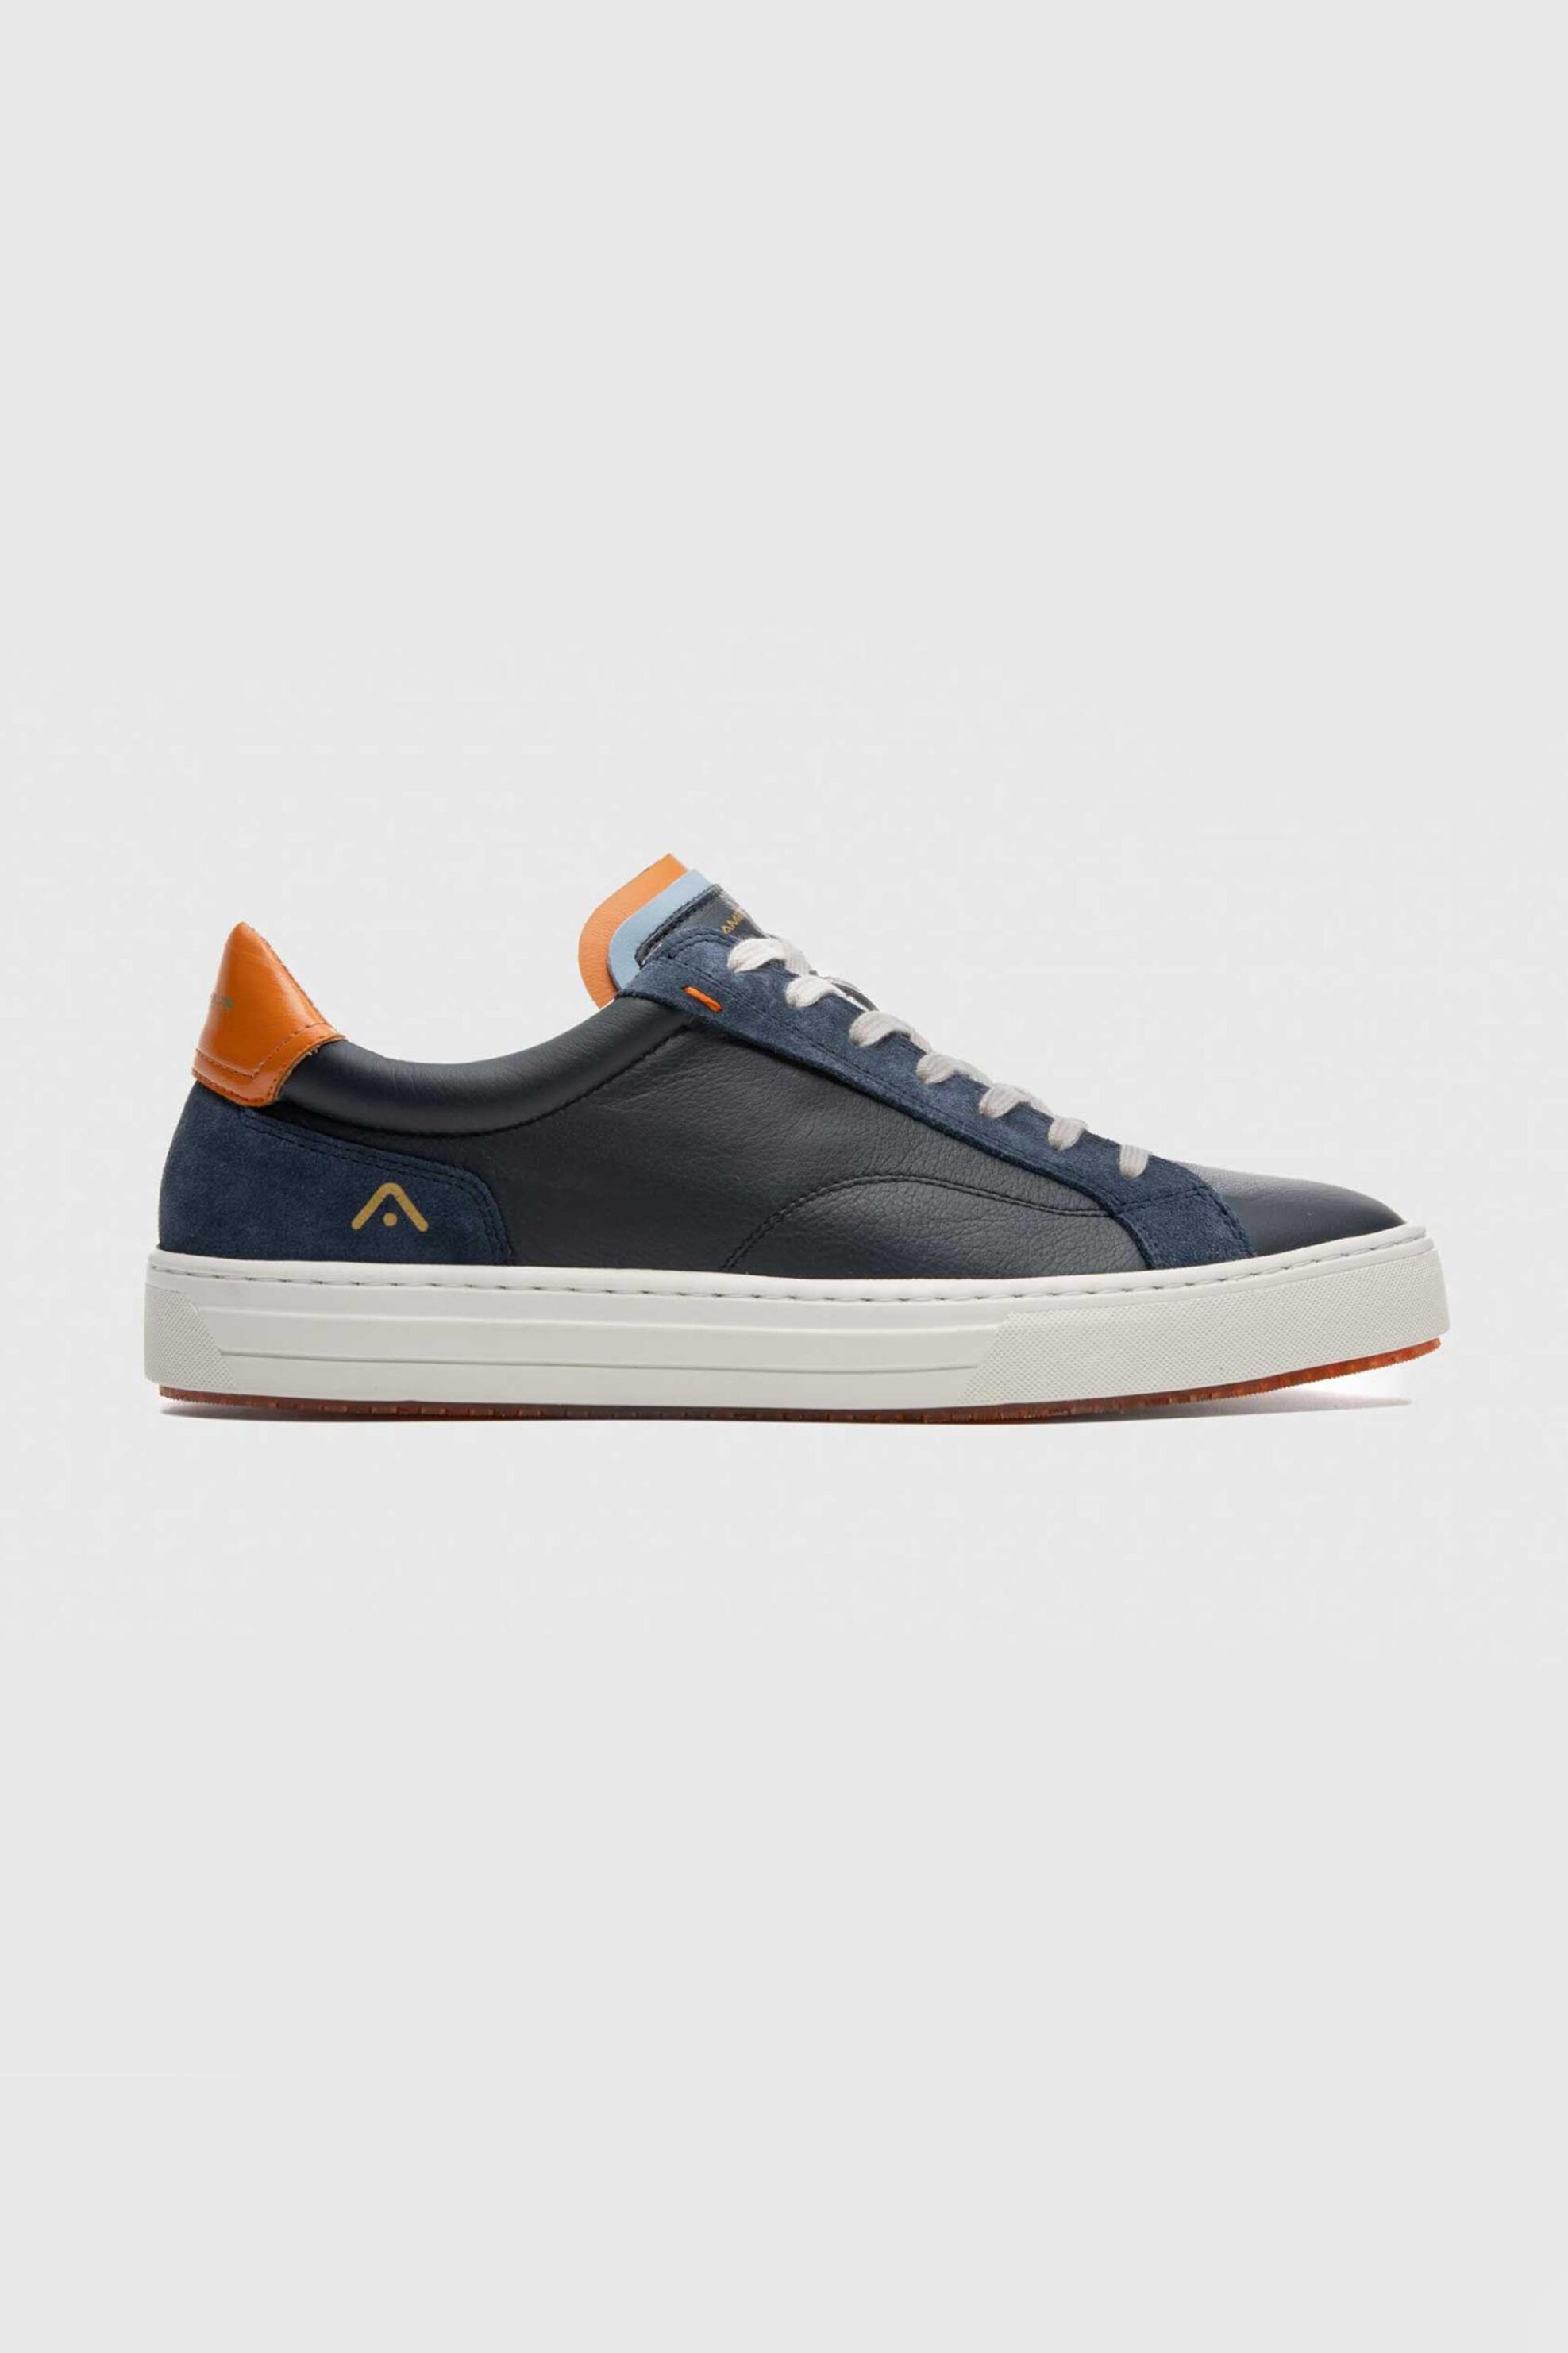 Ανδρική Μόδα > Ανδρικά Παπούτσια > Ανδρικά Sneakers Ambitious ανδρικά δερμάτινα sneakers "Anopolis" - E63393 Μπλε Σκούρο